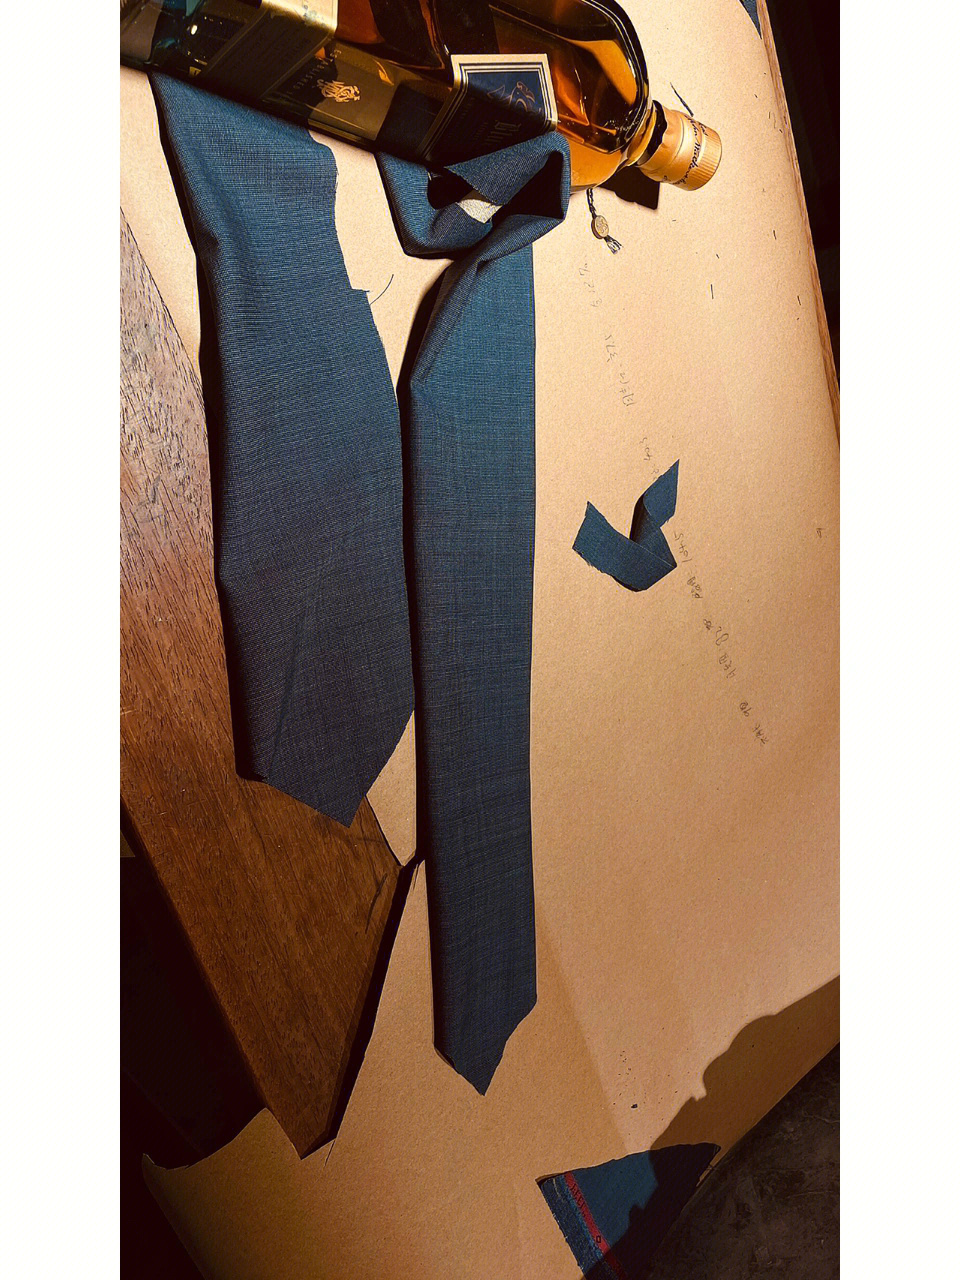 店铺领带花式叠法图片